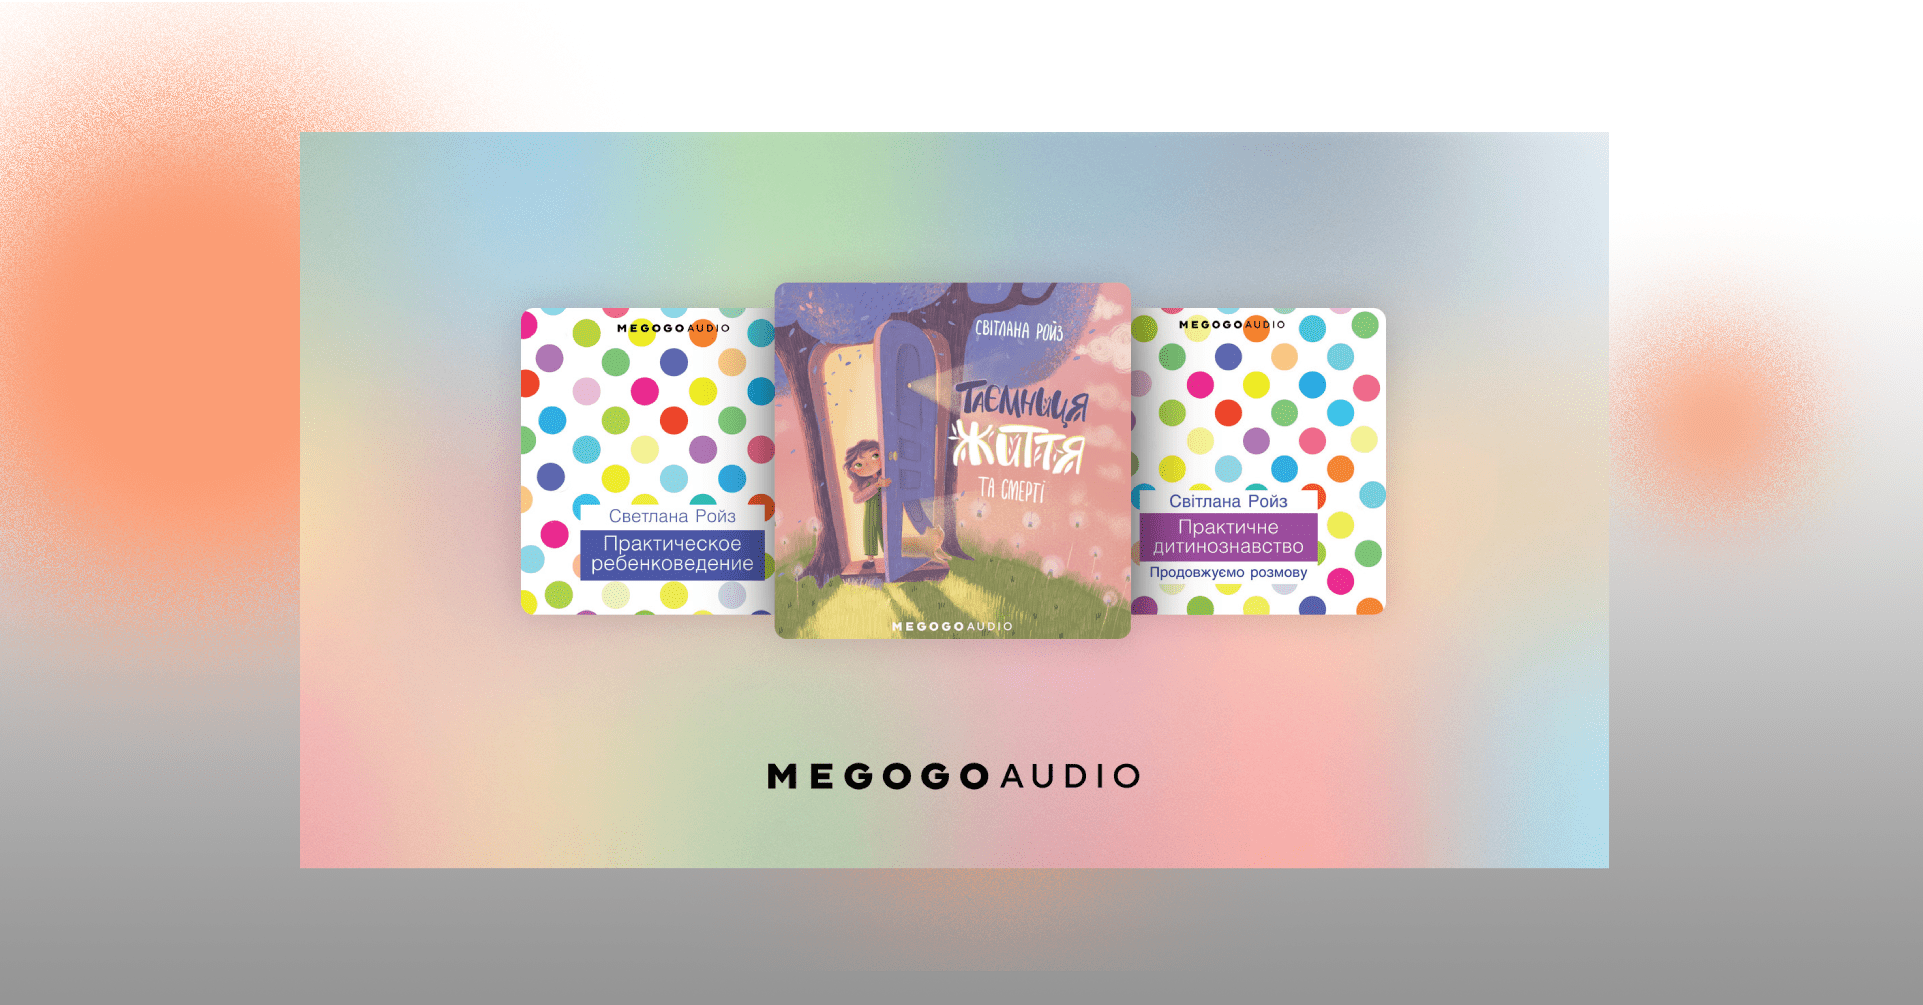 megogo rojz - Створили три аудіокнижки дитячої психологині Світлани Ройз